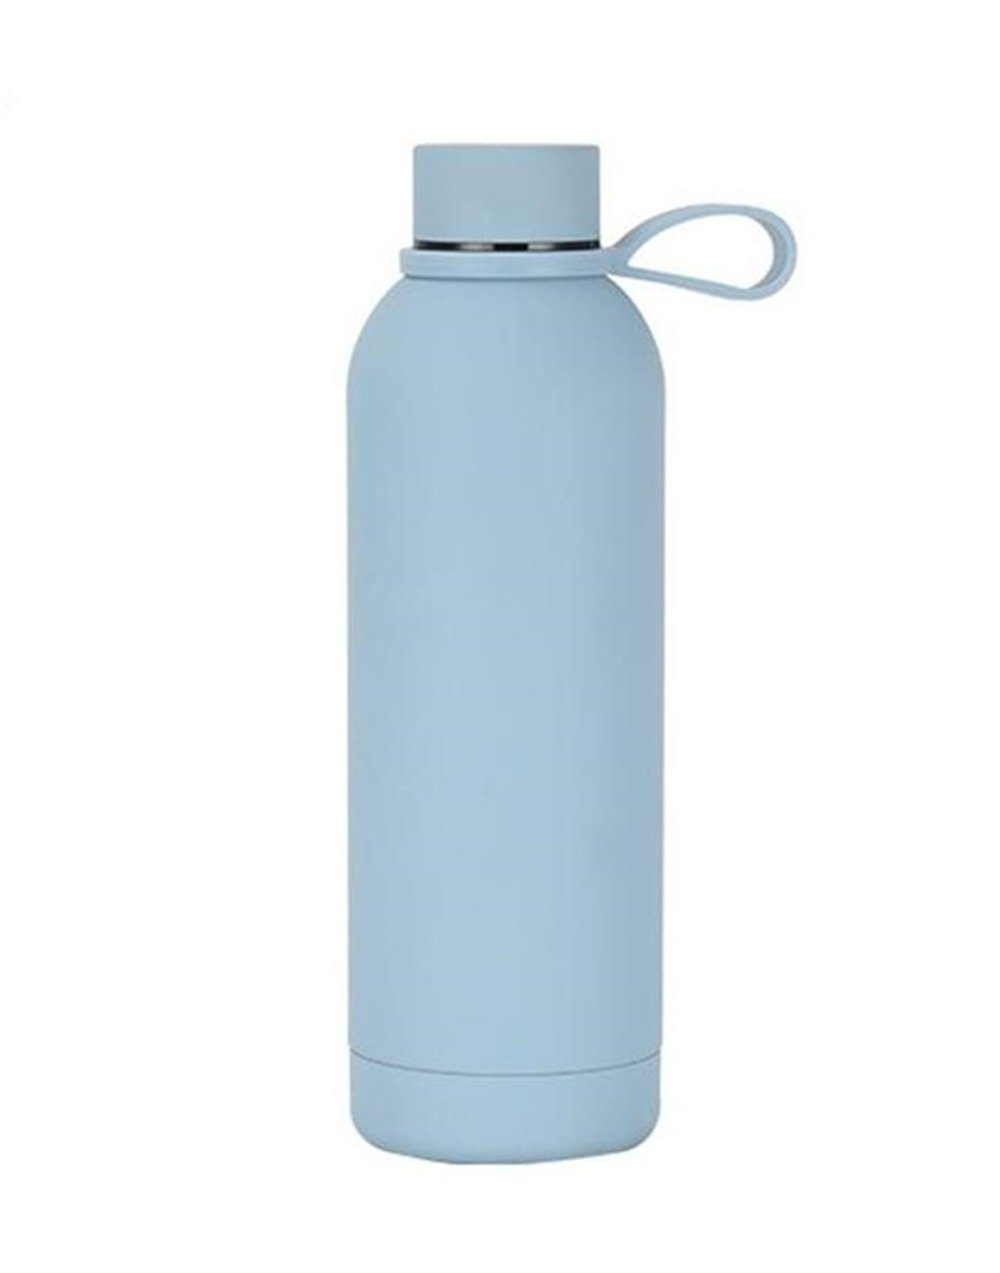 Rouemi Isolierflasche Thermobecher,500ml Trinkflasche,Heiß- und Kaltgetränke Isolierung, 12h heiß/24h kalt Blau